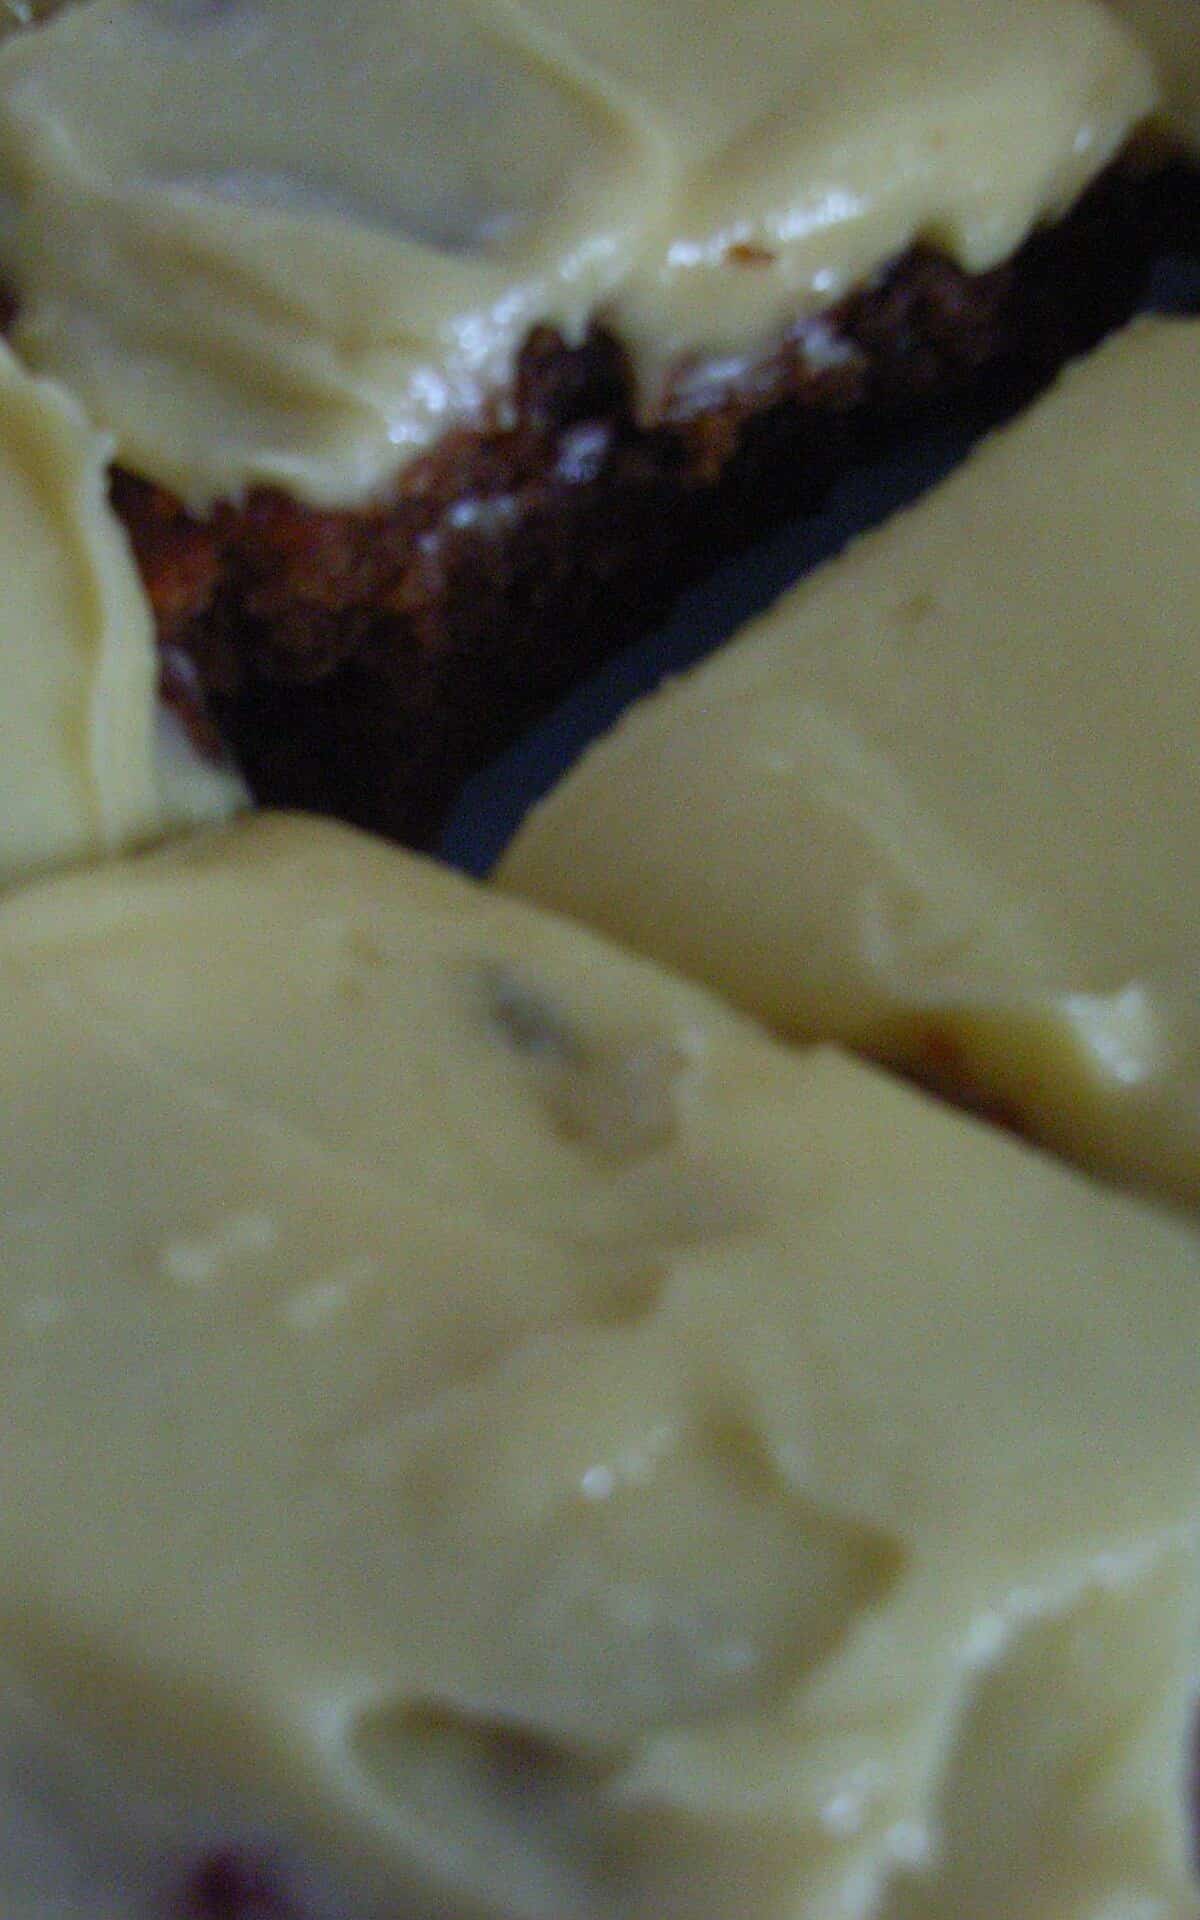 Fruit Cake Slice With Lemon Icing.